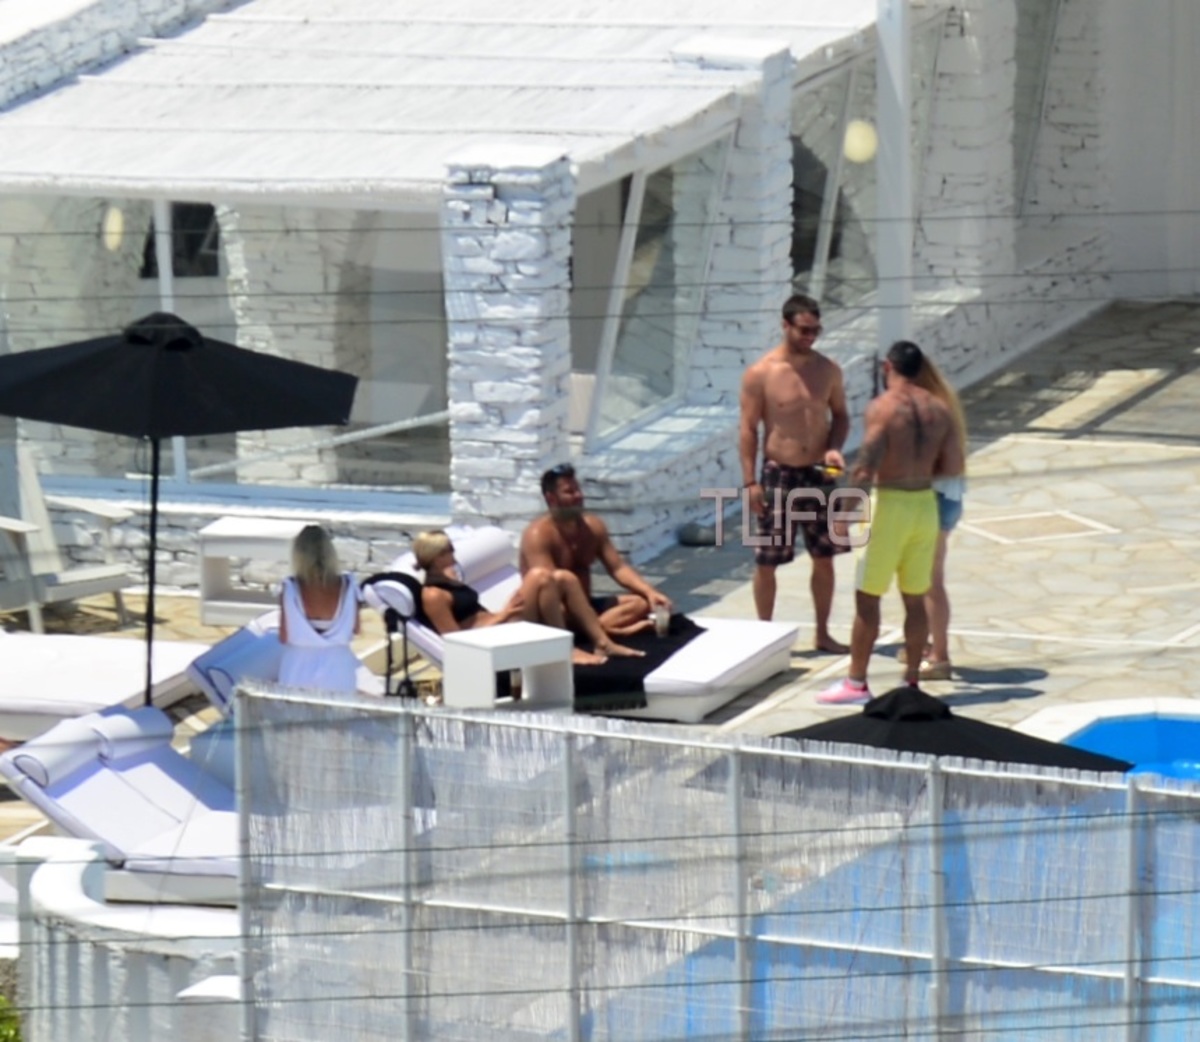 Ο Γιώργος Αγγελόπουλος κάνει μπάνιο με τον Μπο στην πισίνα λίγο πριν το γάμο του Χρανιώτη! Αποκλειστικές φωτογραφίες